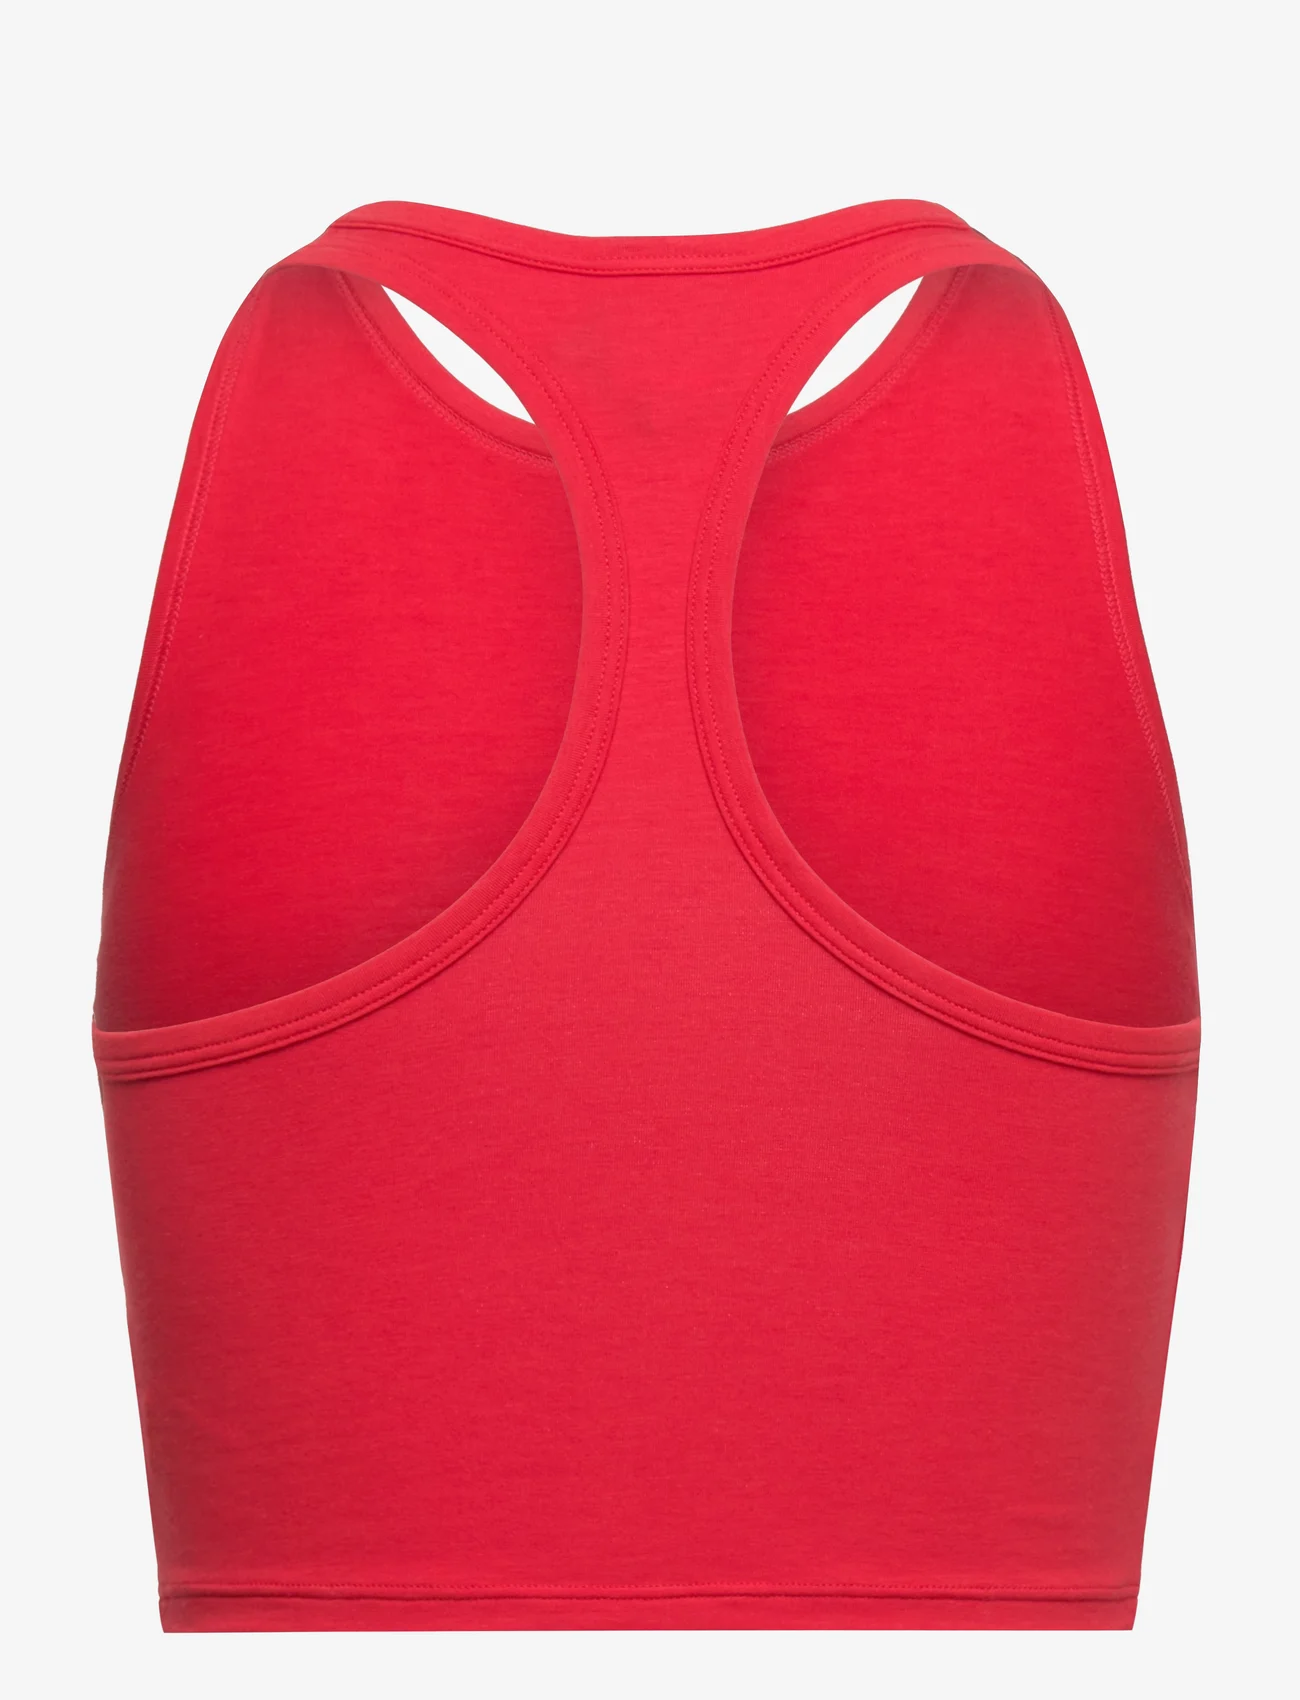 adidas Originals Underwear - Bustier - die niedrigsten preise - red - 1